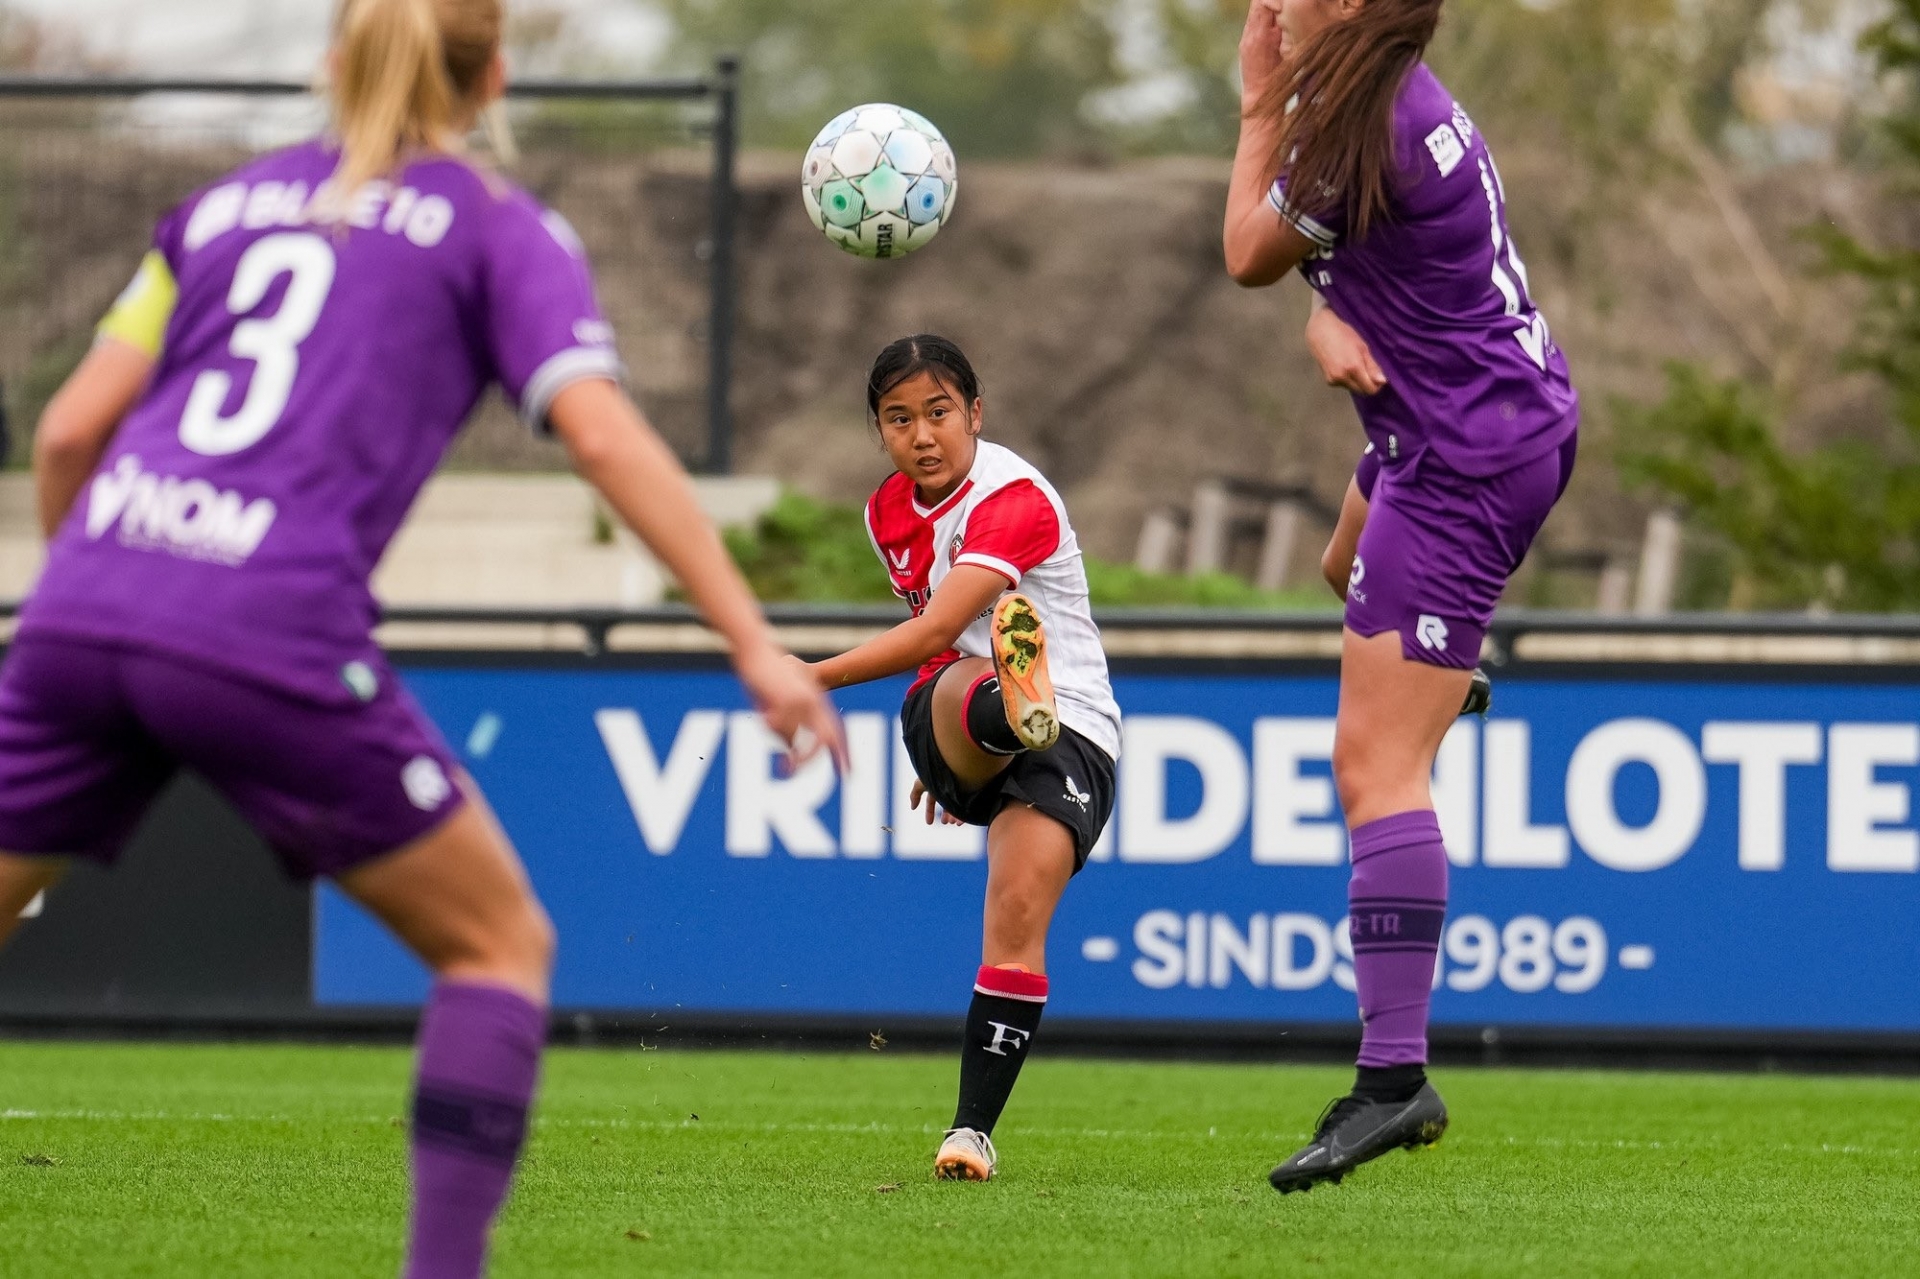 Eva Nguyen từng khoác áo Feyenoord Rotterdam trước khi chuyển sang CLB NAC Breda